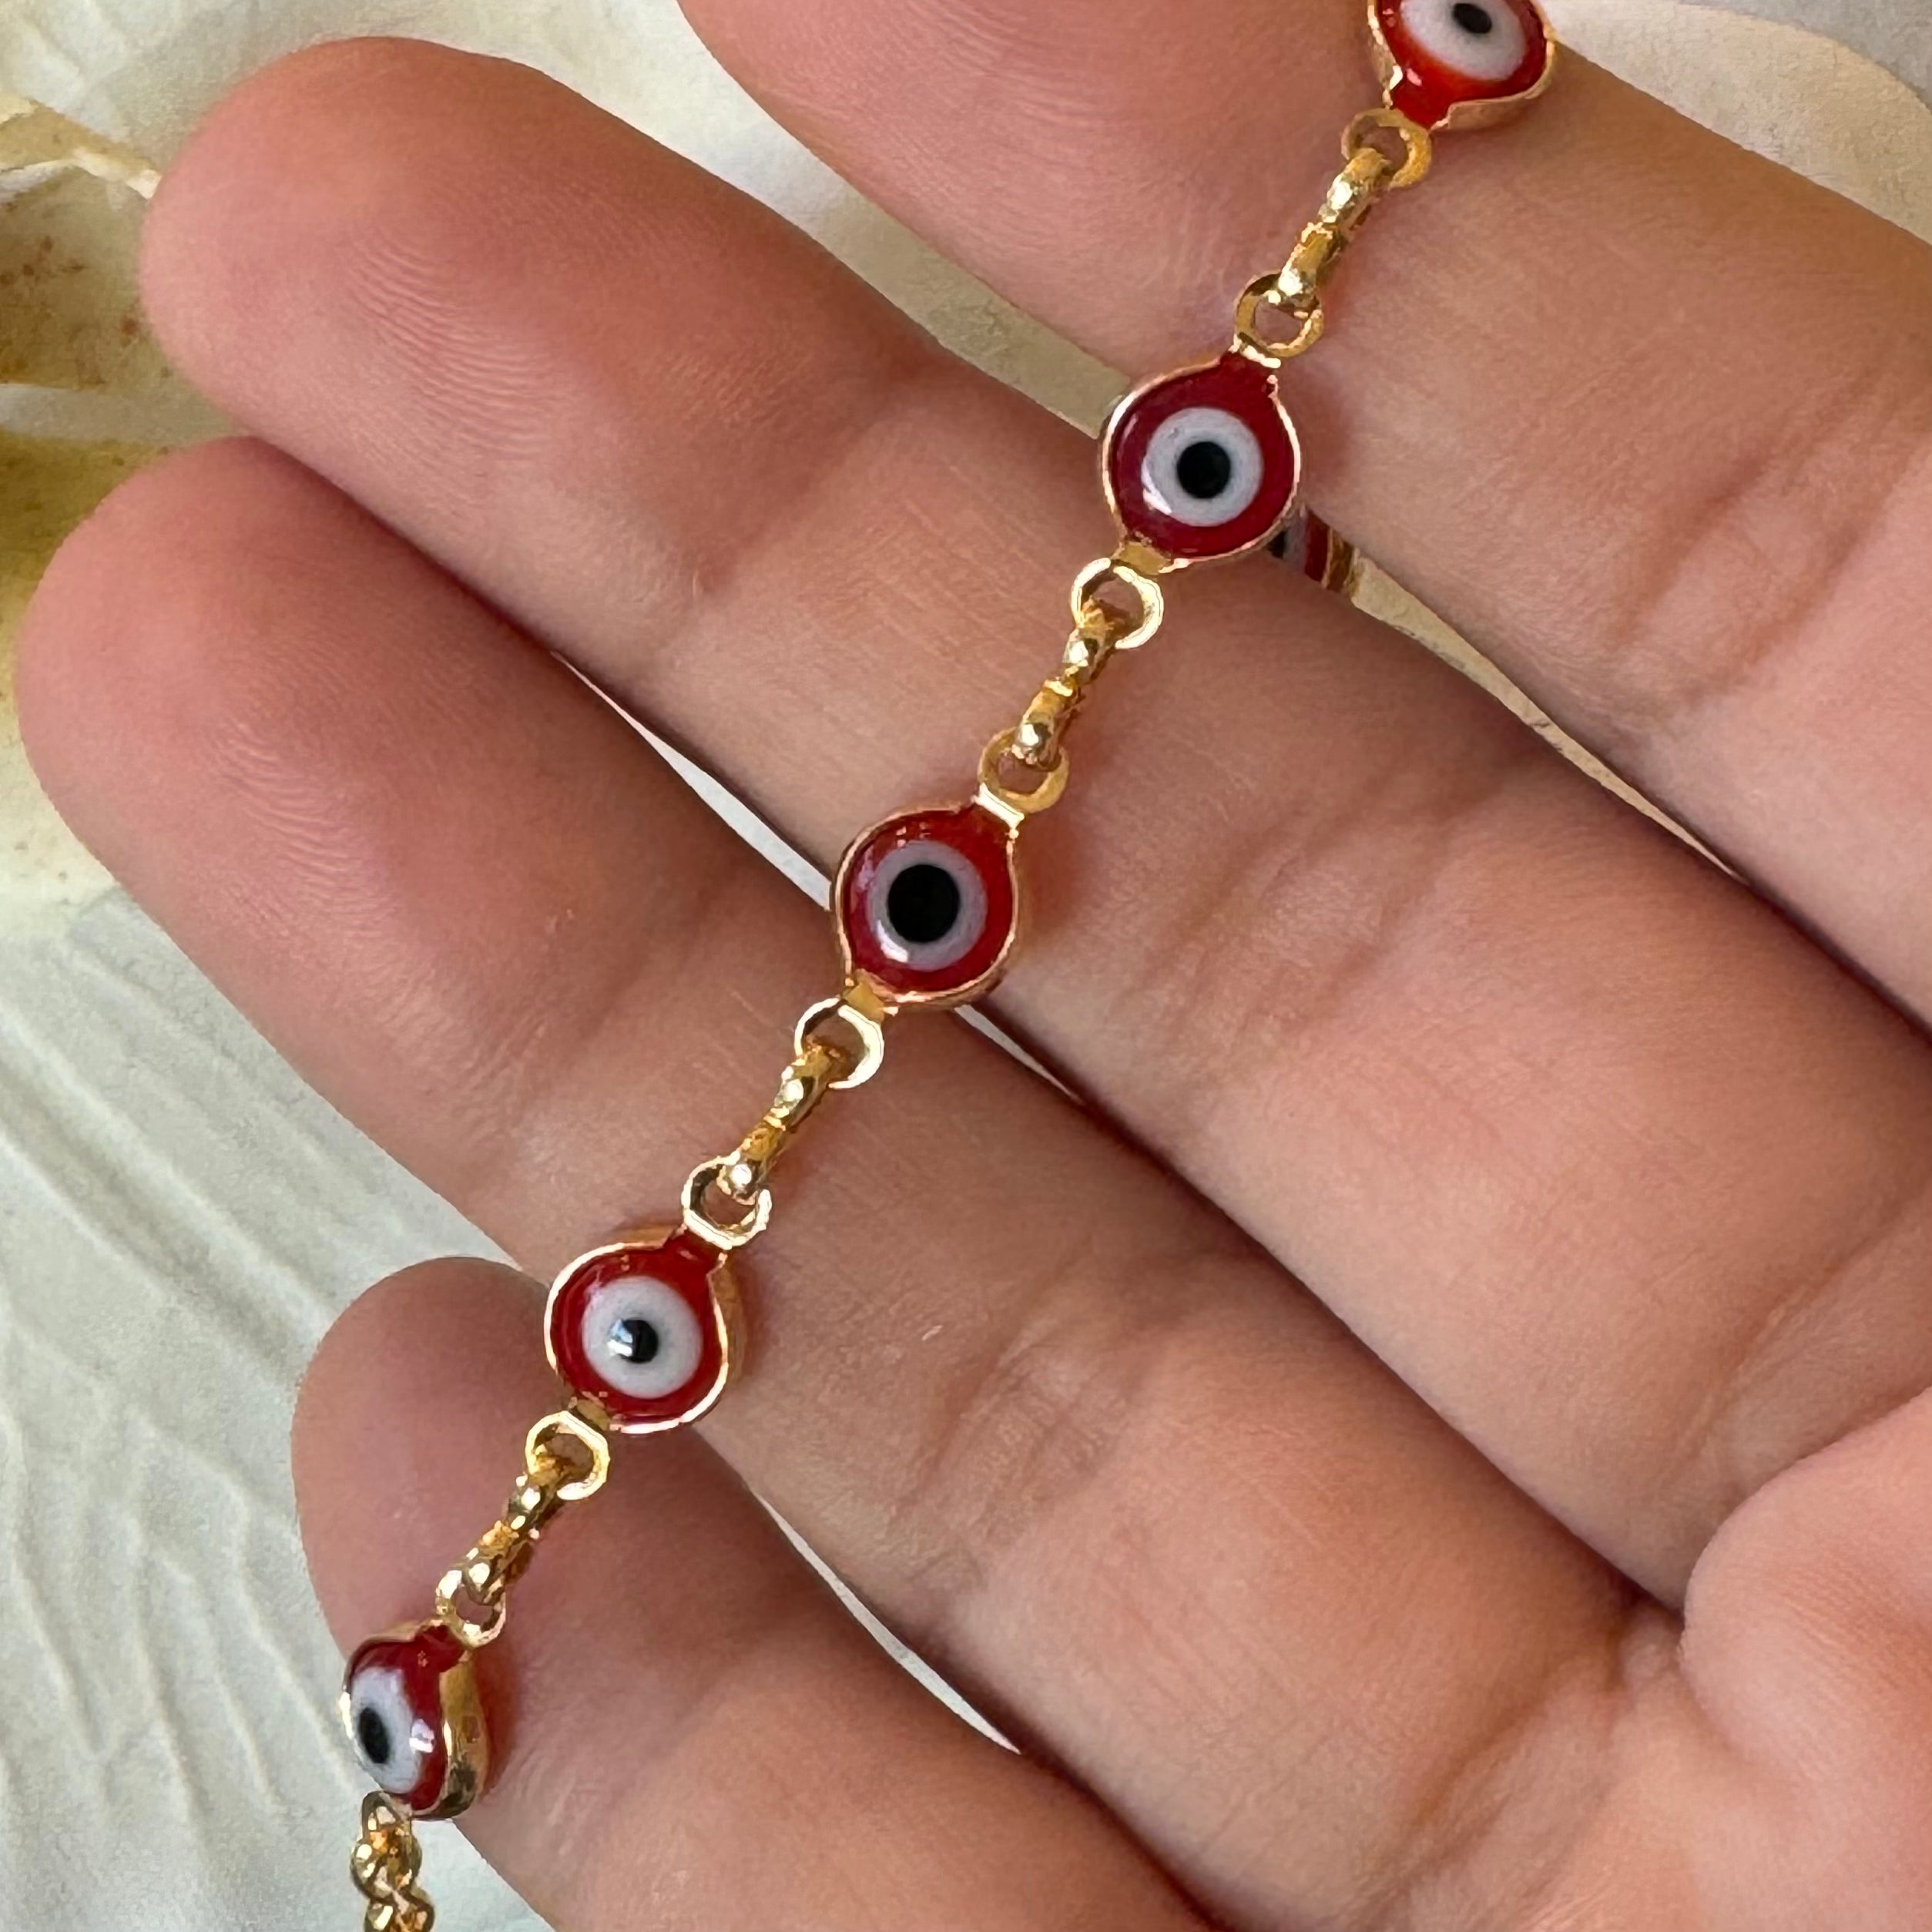 Ojitos chain bracelet